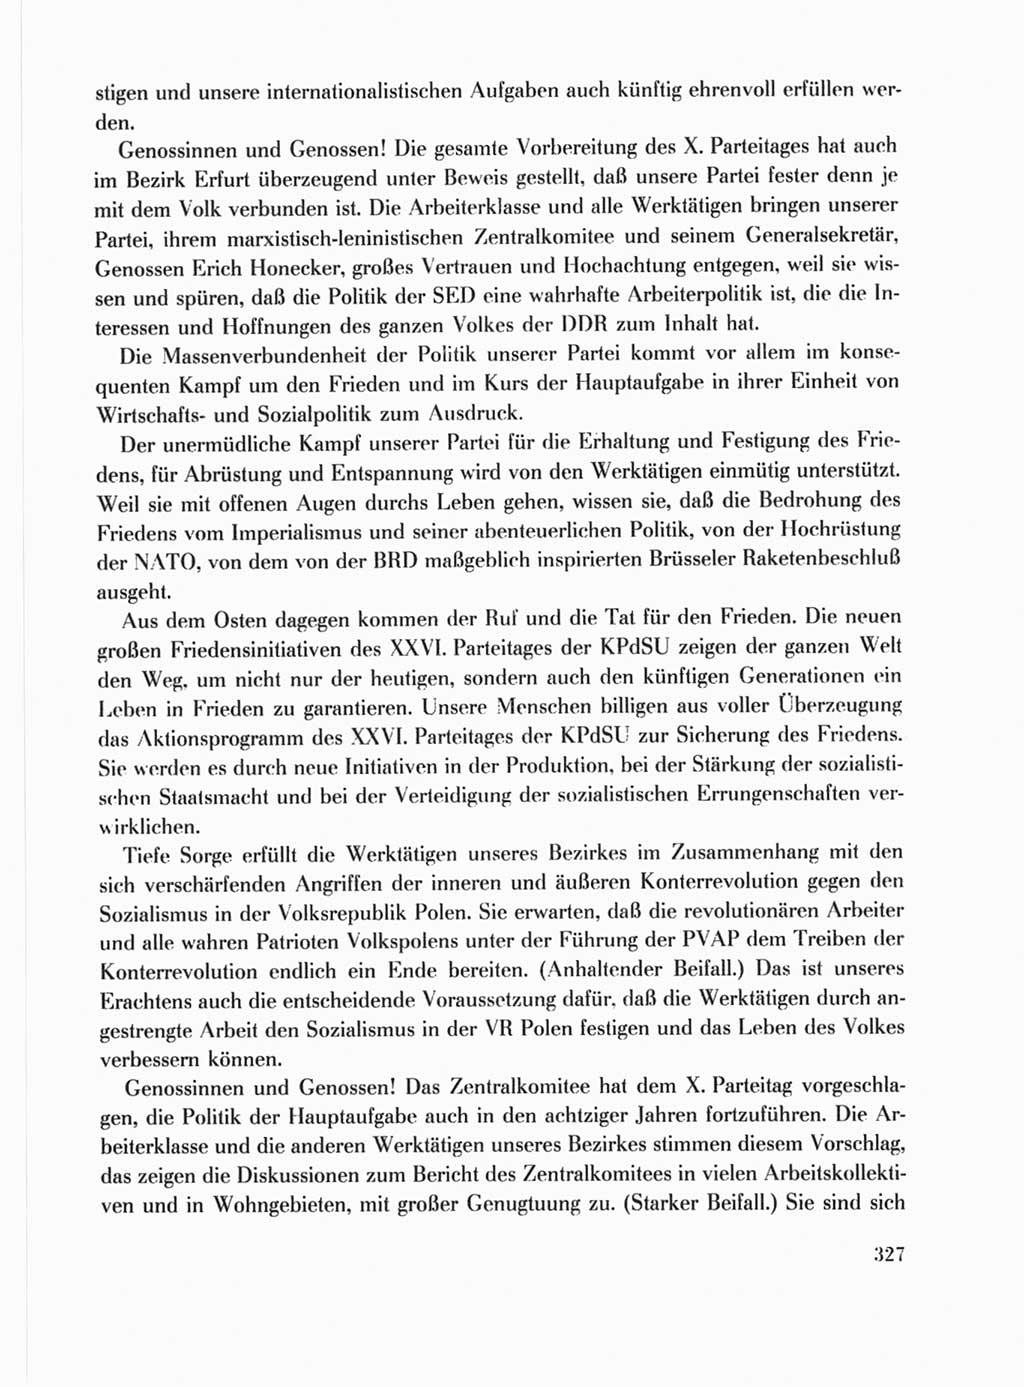 Protokoll der Verhandlungen des Ⅹ. Parteitages der Sozialistischen Einheitspartei Deutschlands (SED) [Deutsche Demokratische Republik (DDR)] 1981, Band 1, Seite 327 (Prot. Verh. Ⅹ. PT SED DDR 1981, Bd. 1, S. 327)